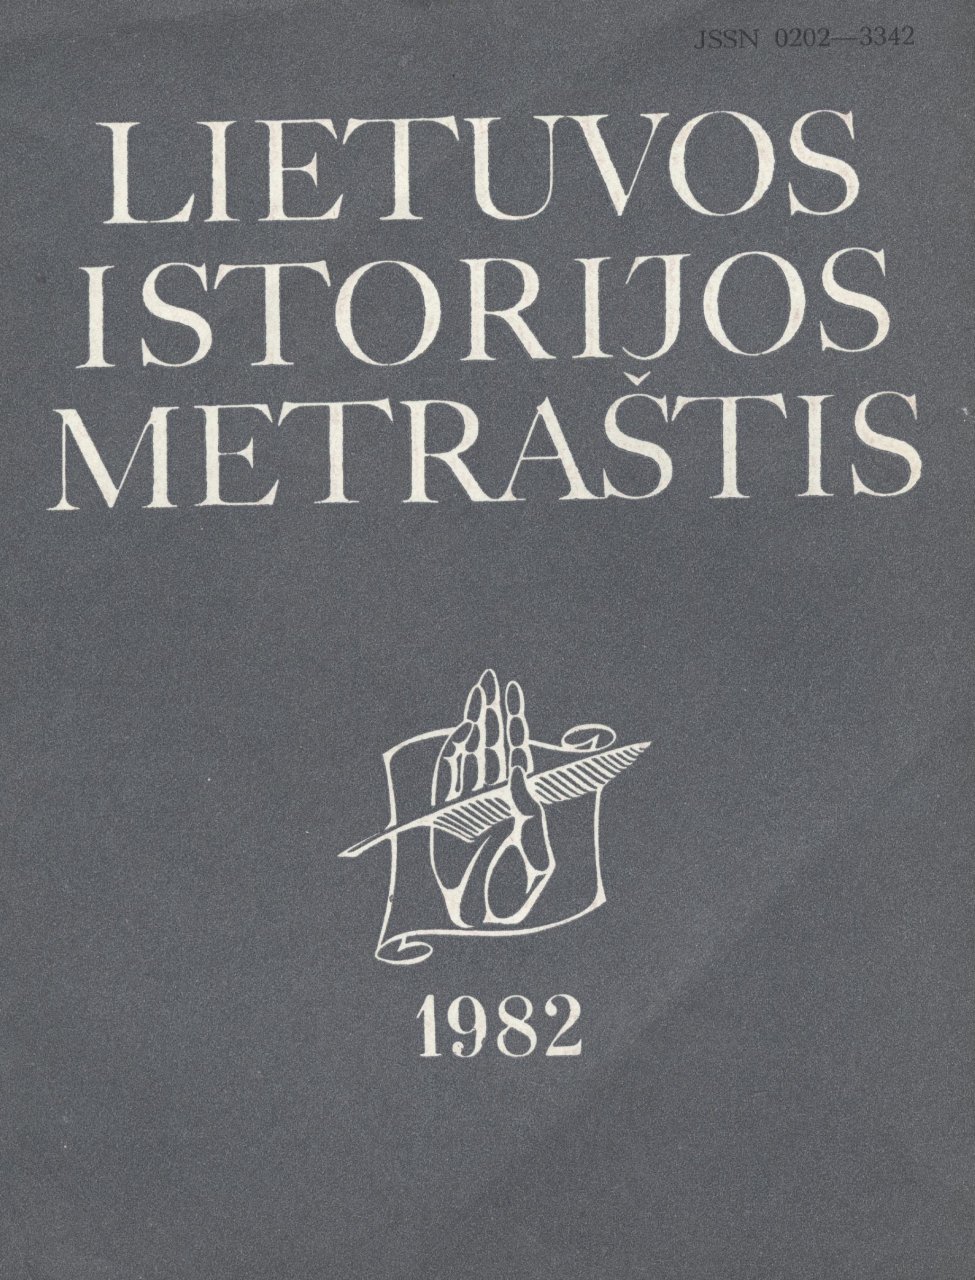 Lietuvos istorijos metraštis 1982 metai